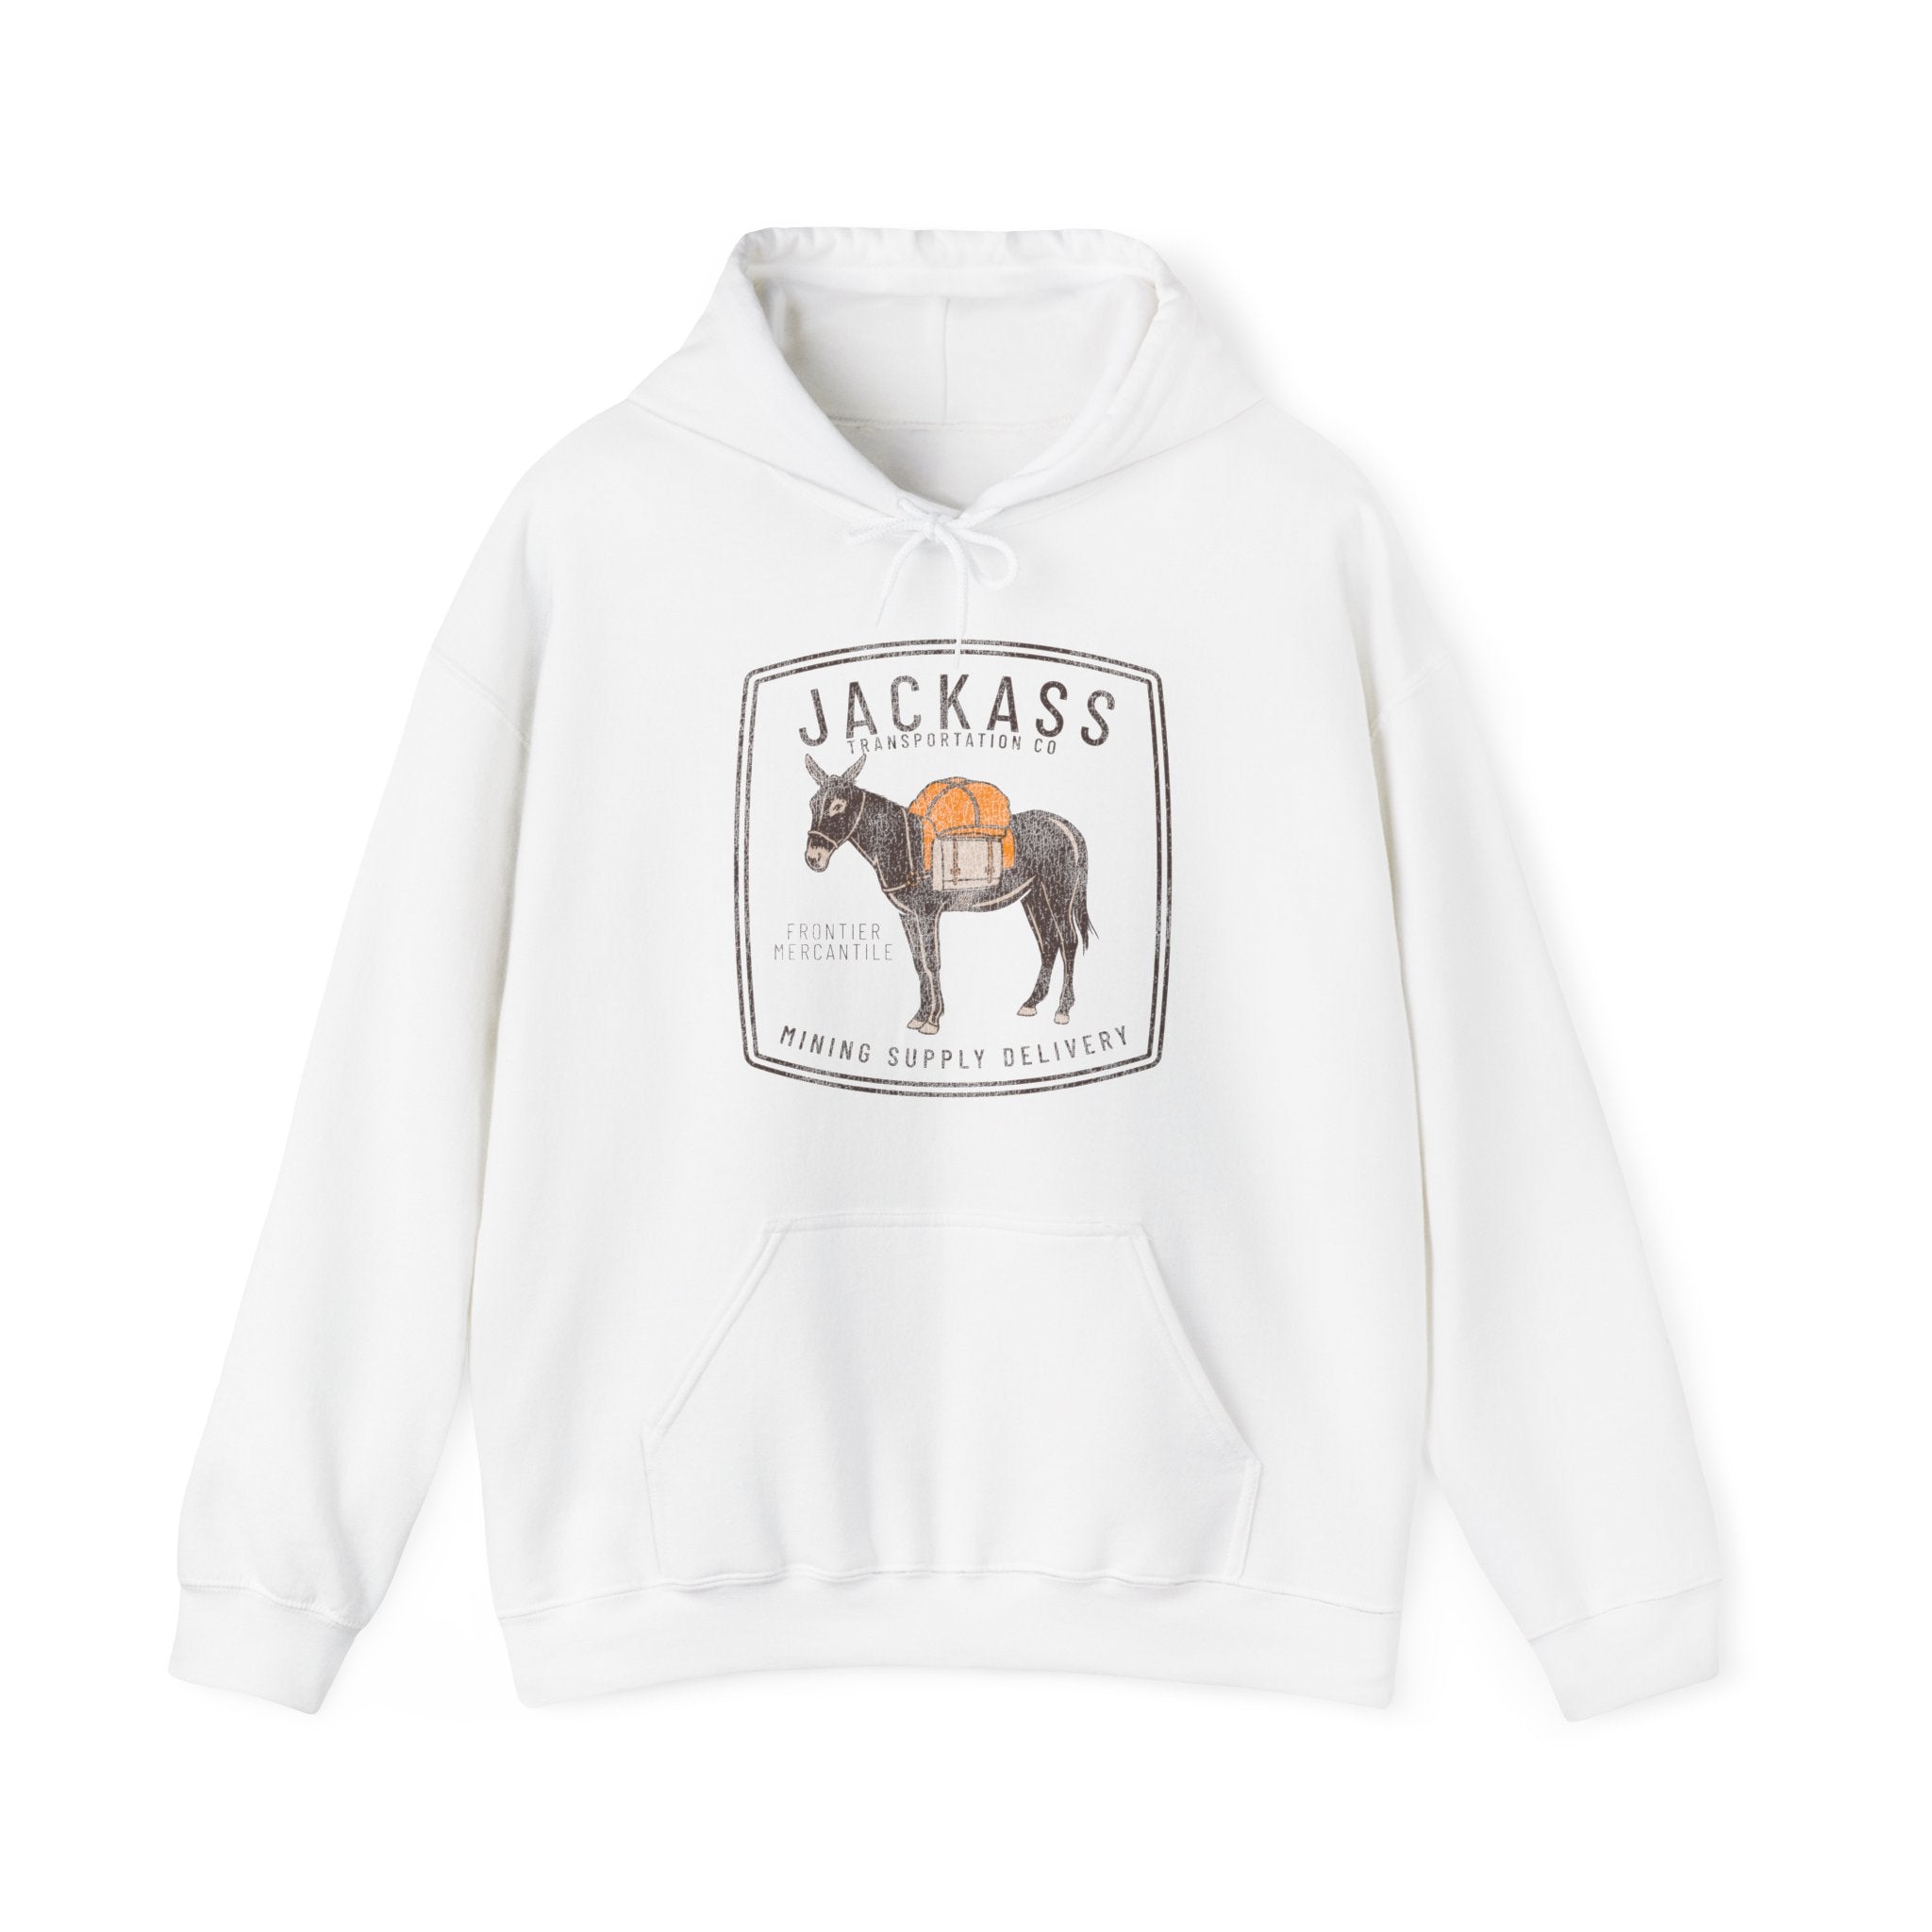 Jackass Transportation Co Hooded Sweatshirt